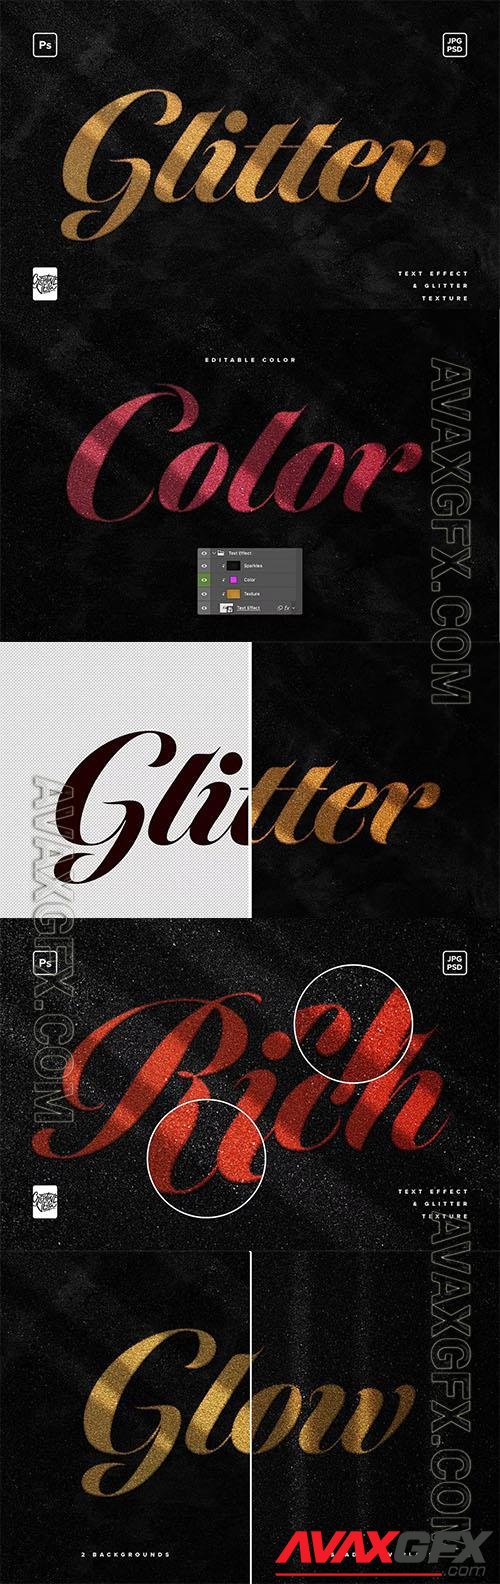 Glitter Photoshop Text Effect PSD